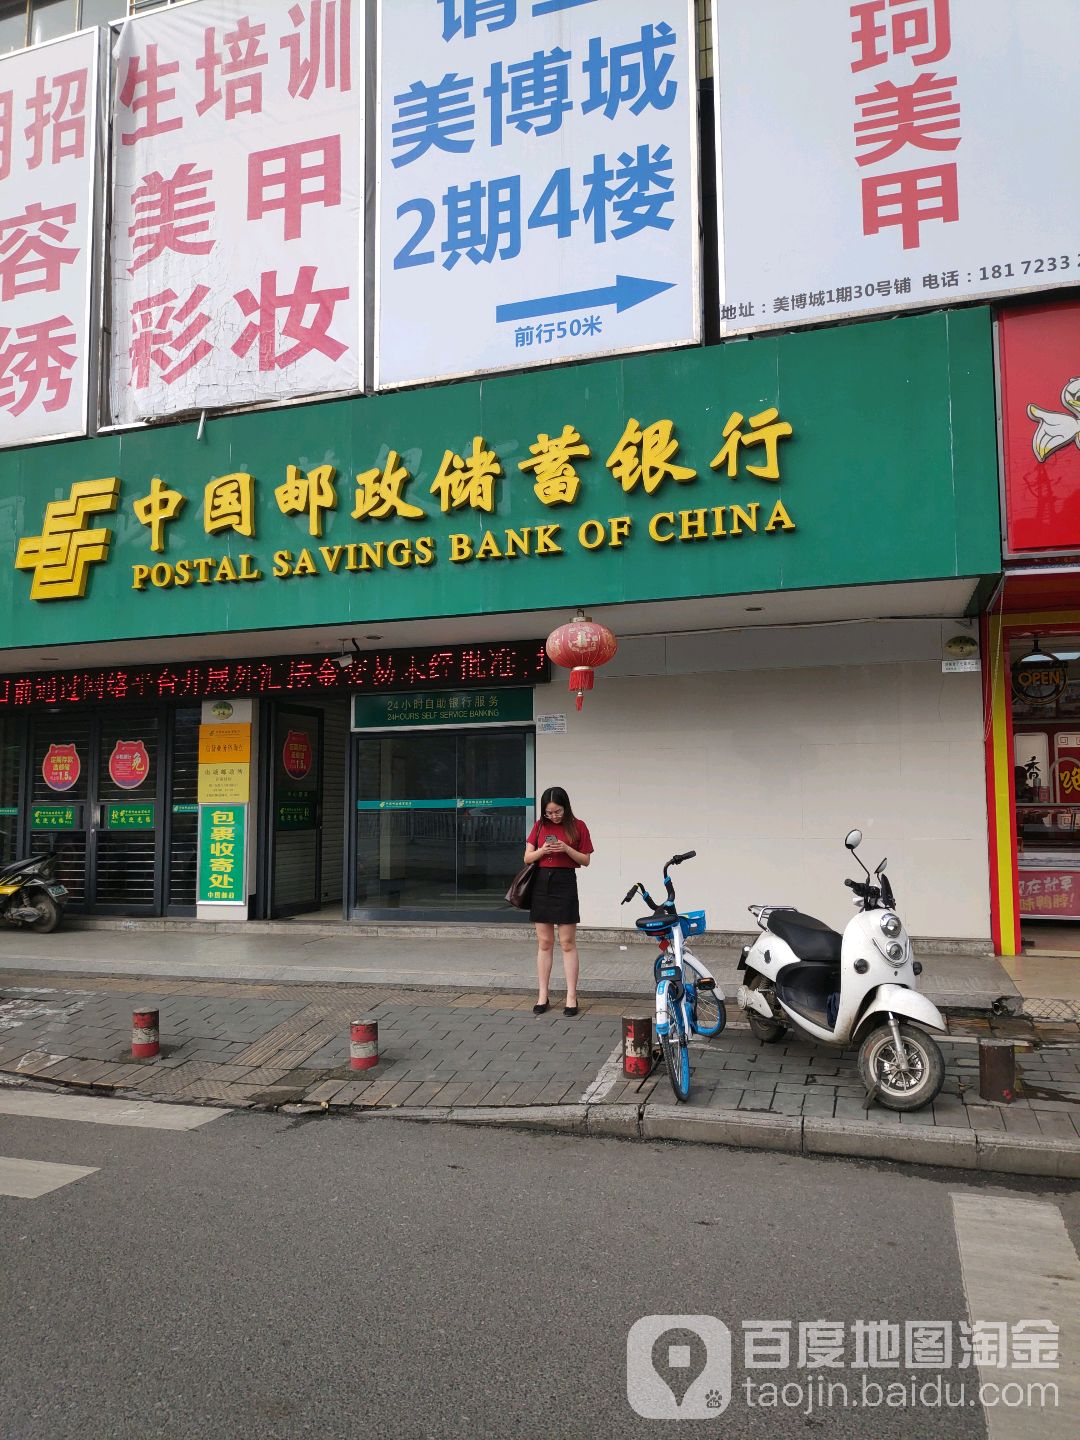 中國郵政儲蓄銀行24小時自助銀行服務(北湖南路營業所)